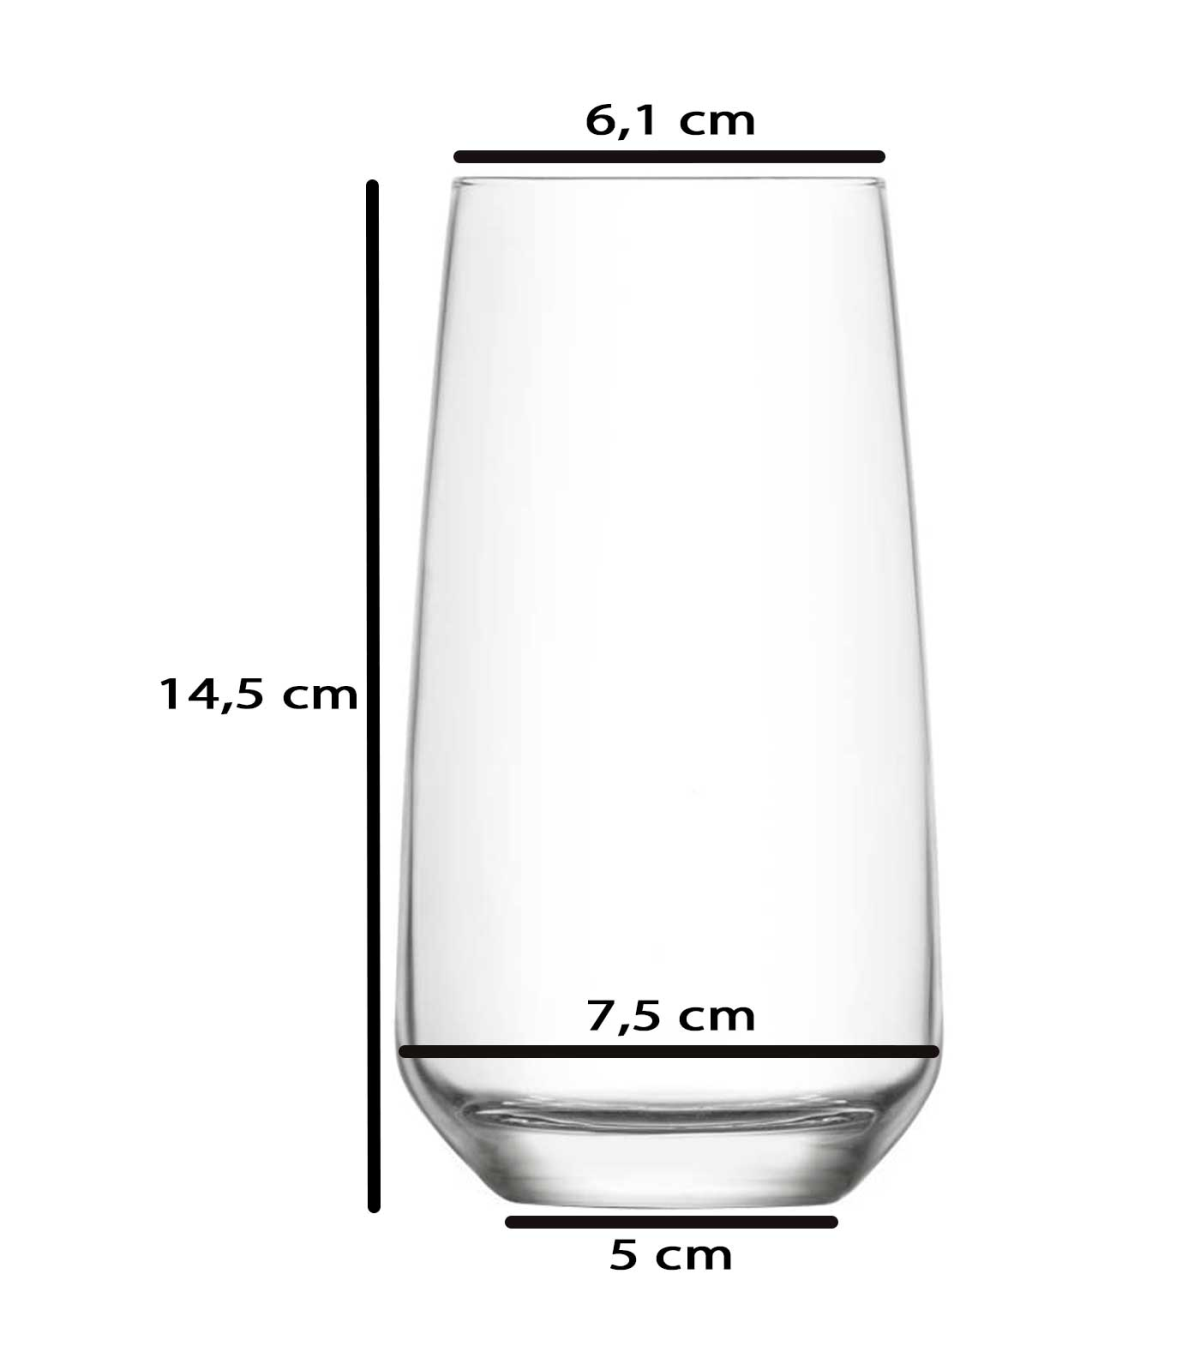 Tradineur - Set de 12 vasos de cristal modelo Ruta, vasos clásicos para  agua, bebidas, resistentes, aptos para lavavajillas (36